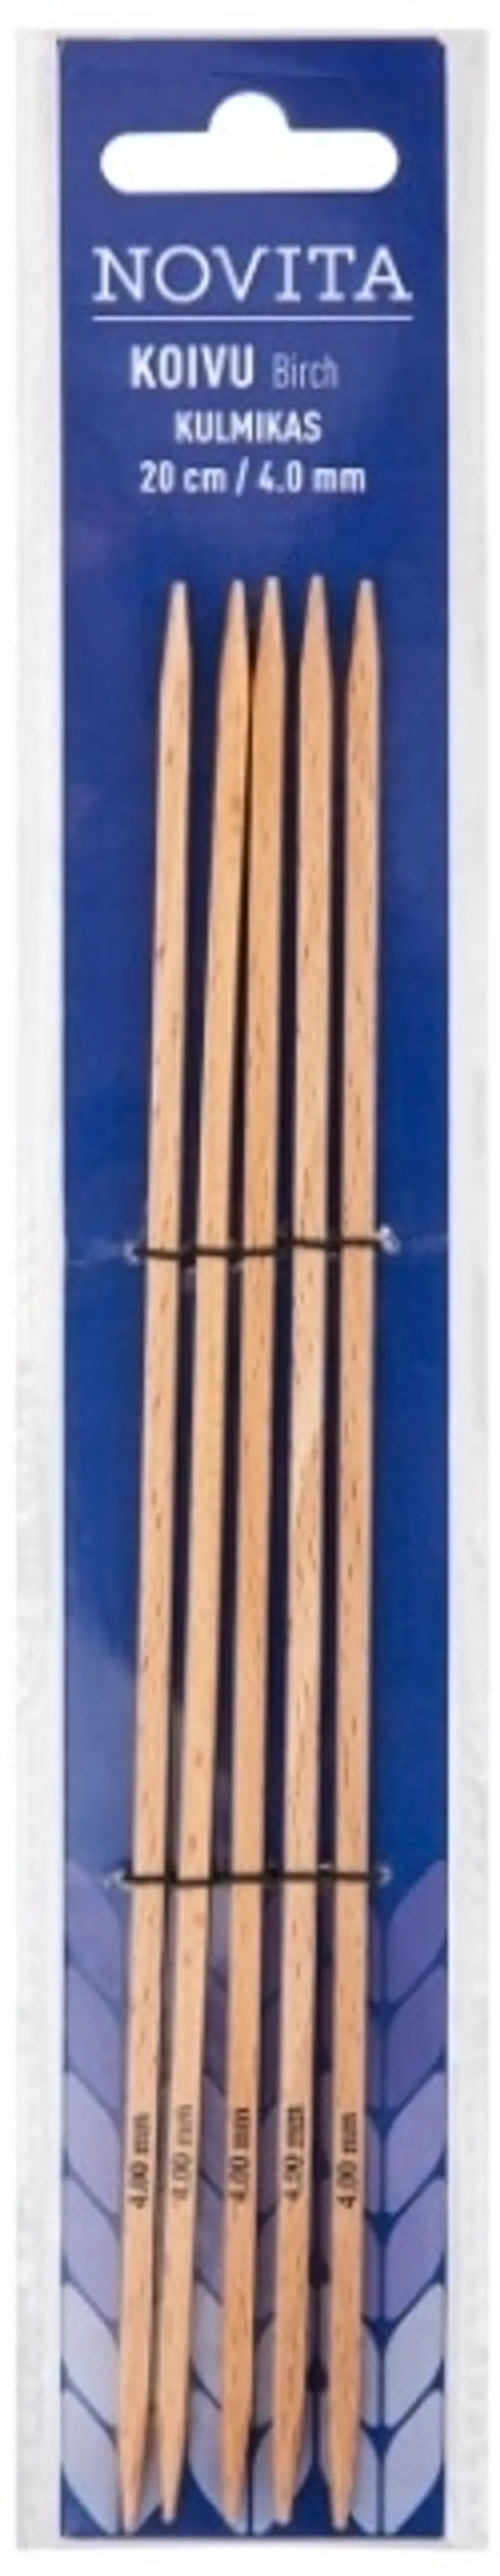 Novita Sukkapuikko kulmikas 20cm - 4 mm koivu | Prisma verkkokauppa